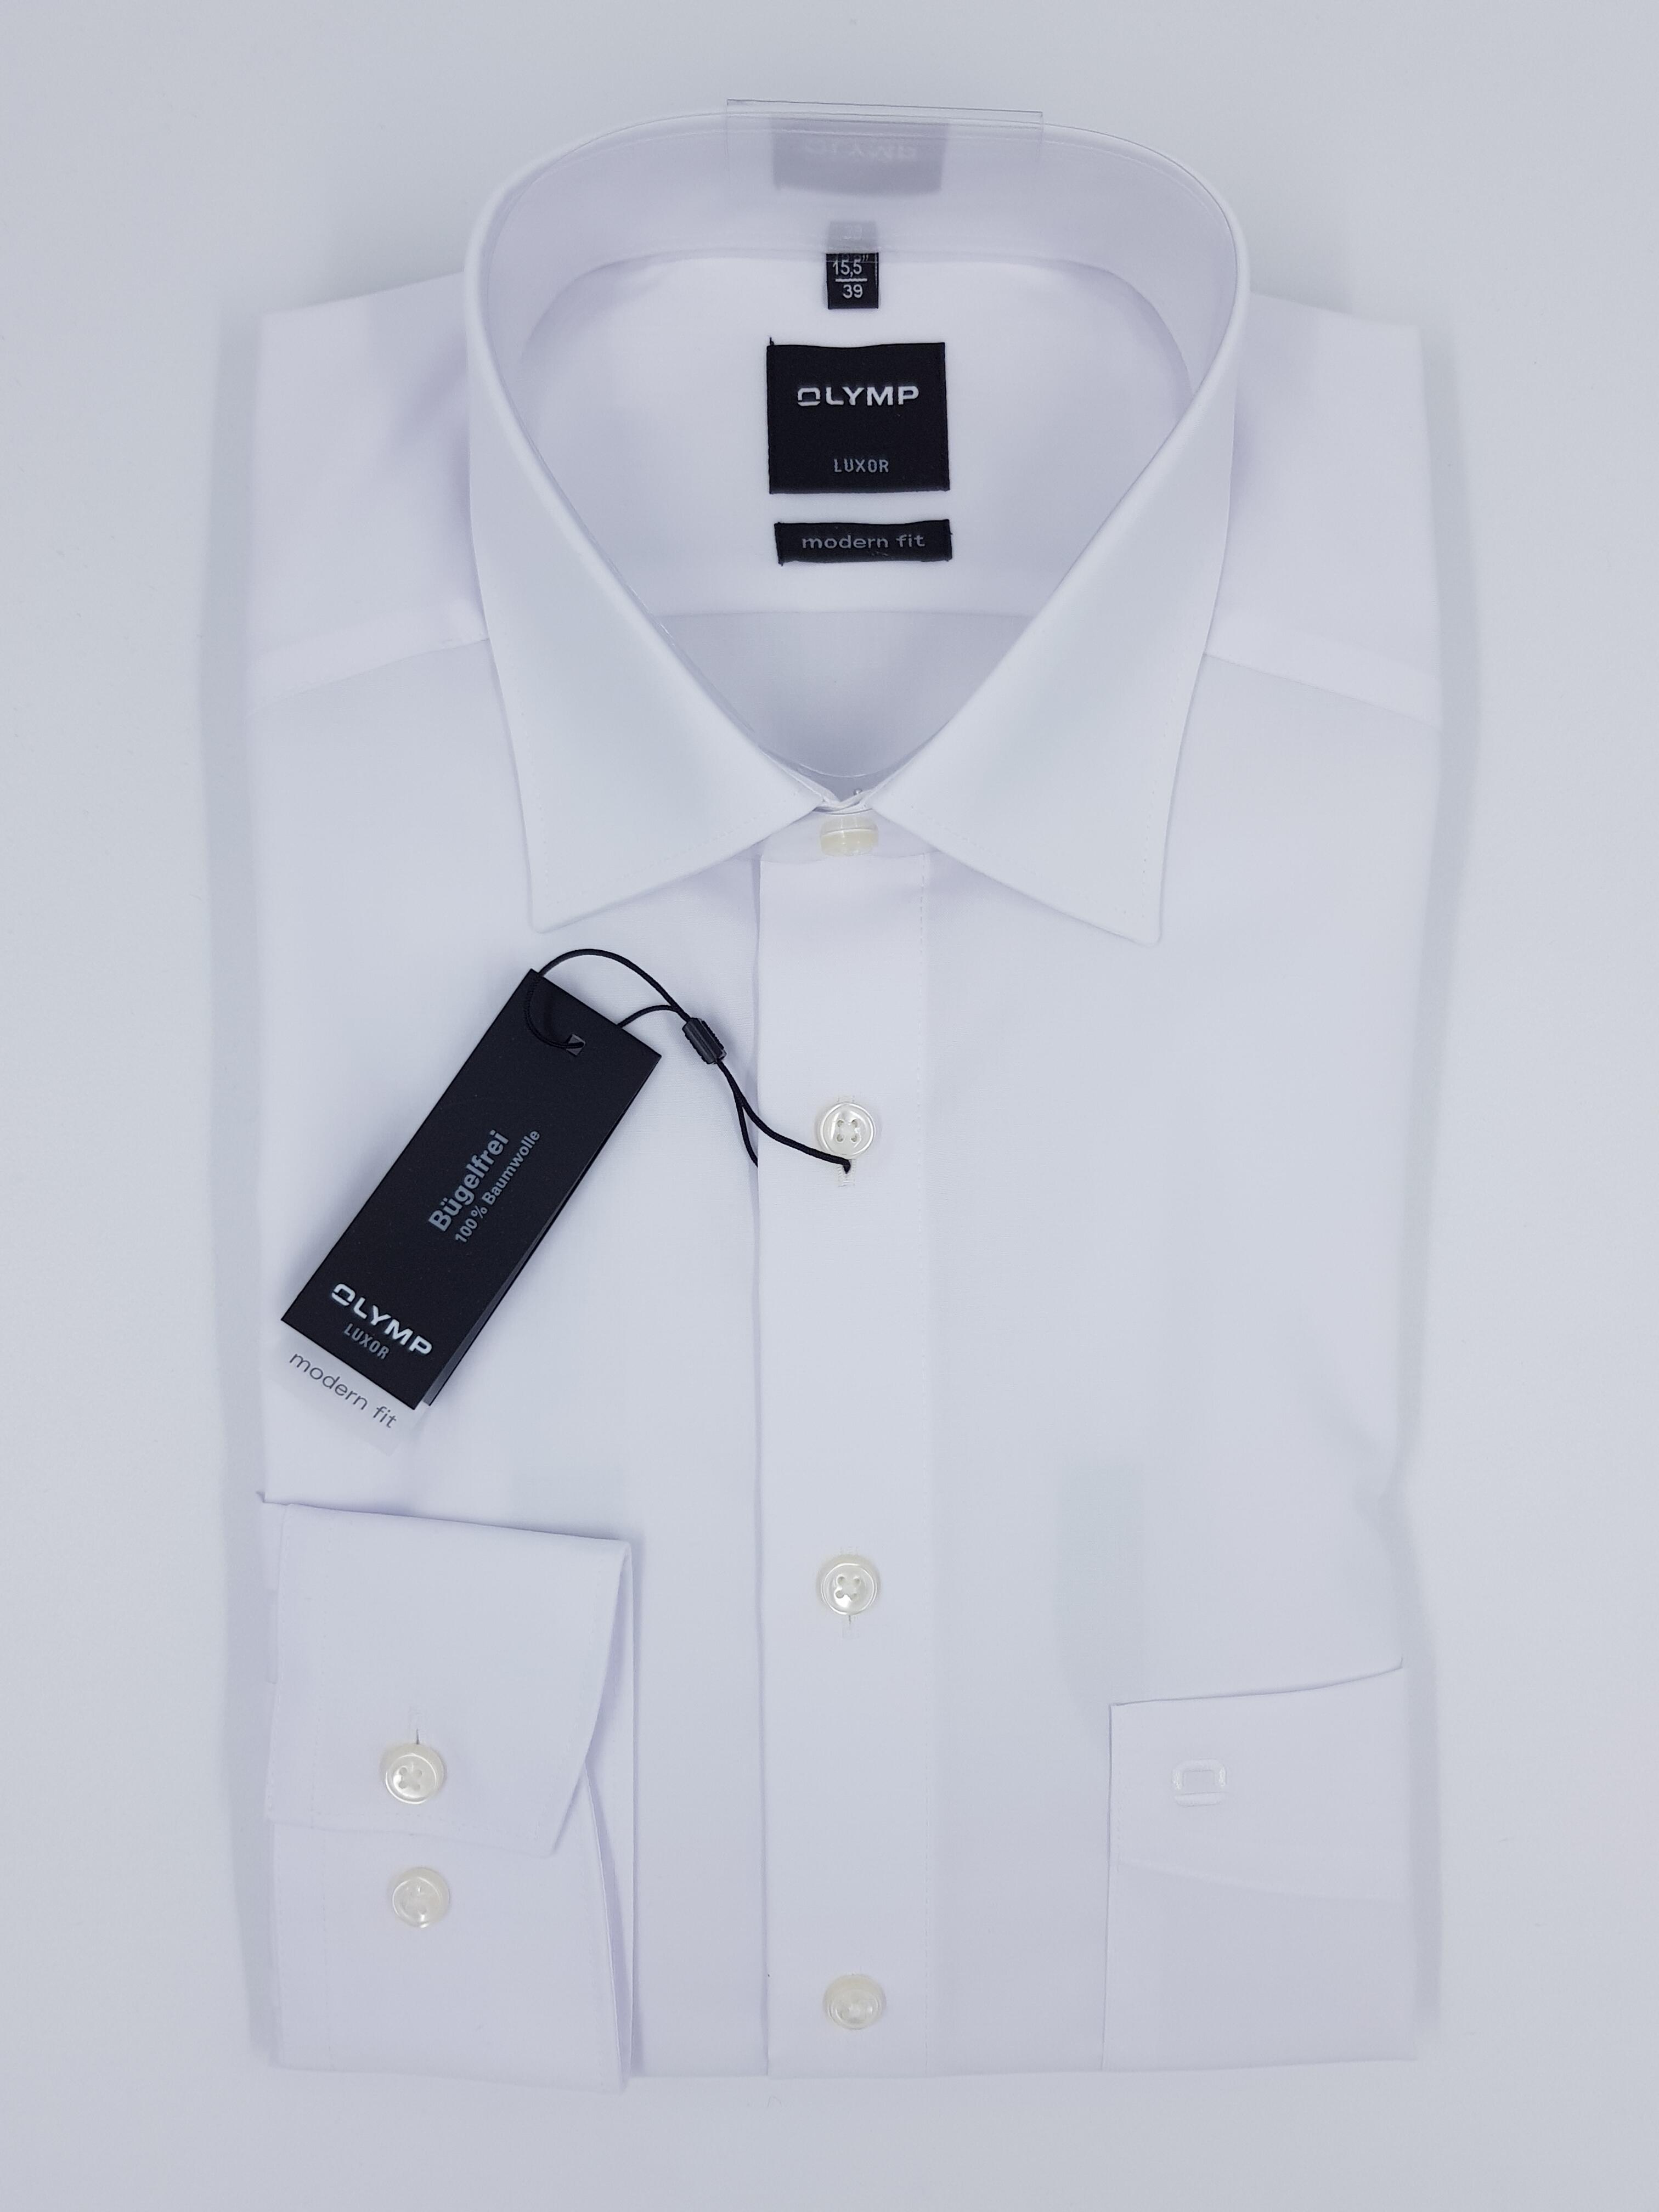 Olymp Olymp Hemd weiß in langarm Bügelfrei Luxor Qualität Mode | Gmunden Schönleitner fit Gmunden modern bei shoppen stilvoll